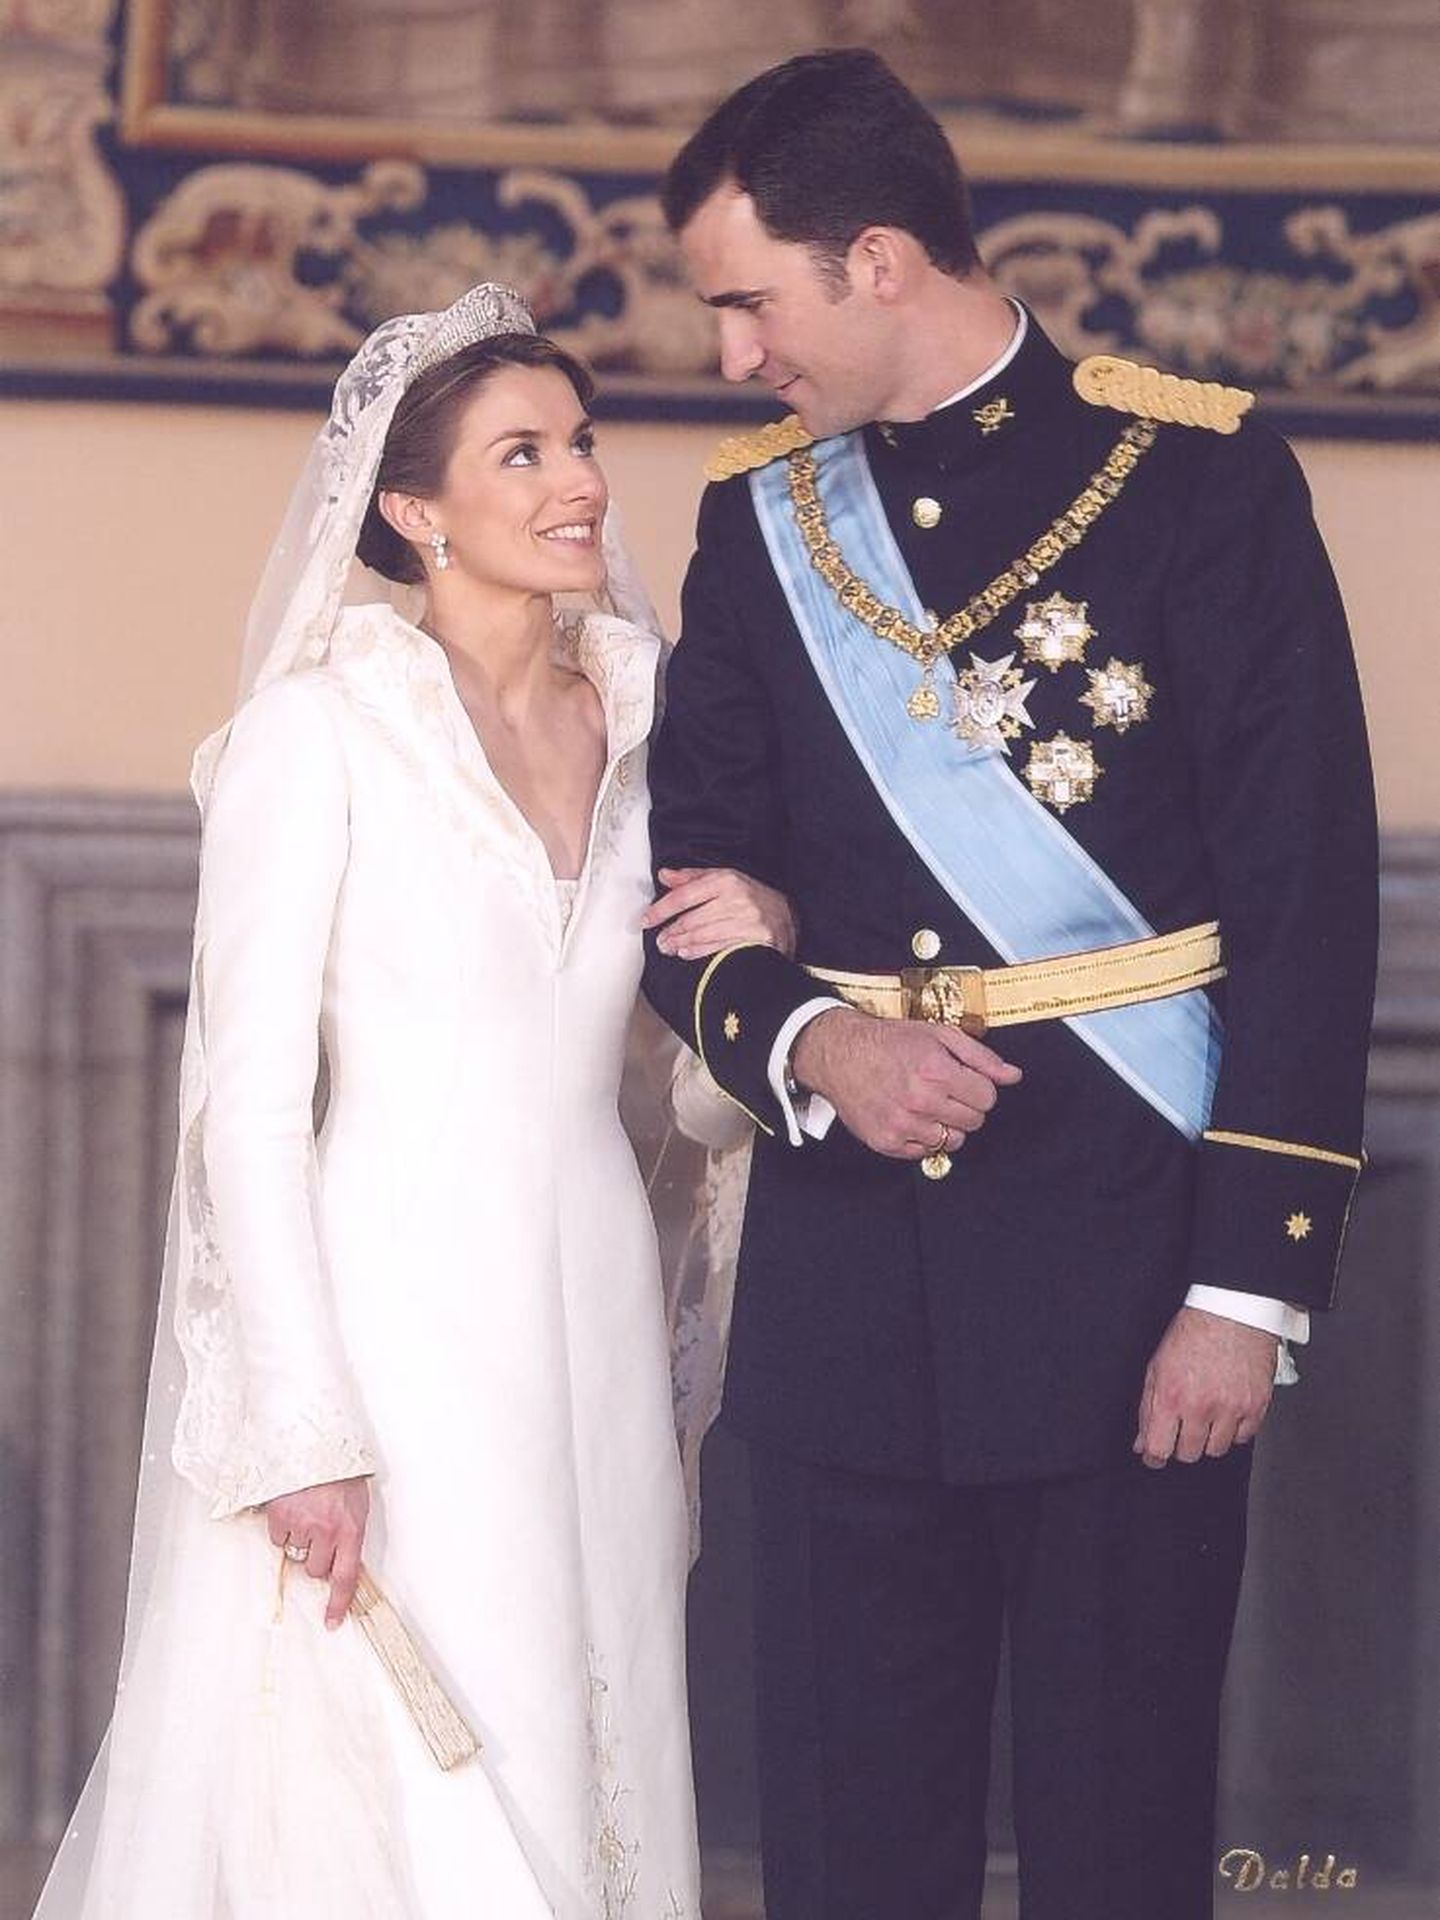 Los entonces Príncipes de Asturias, el día de su boda. (Dalda/Casa de S. M. el Rey)